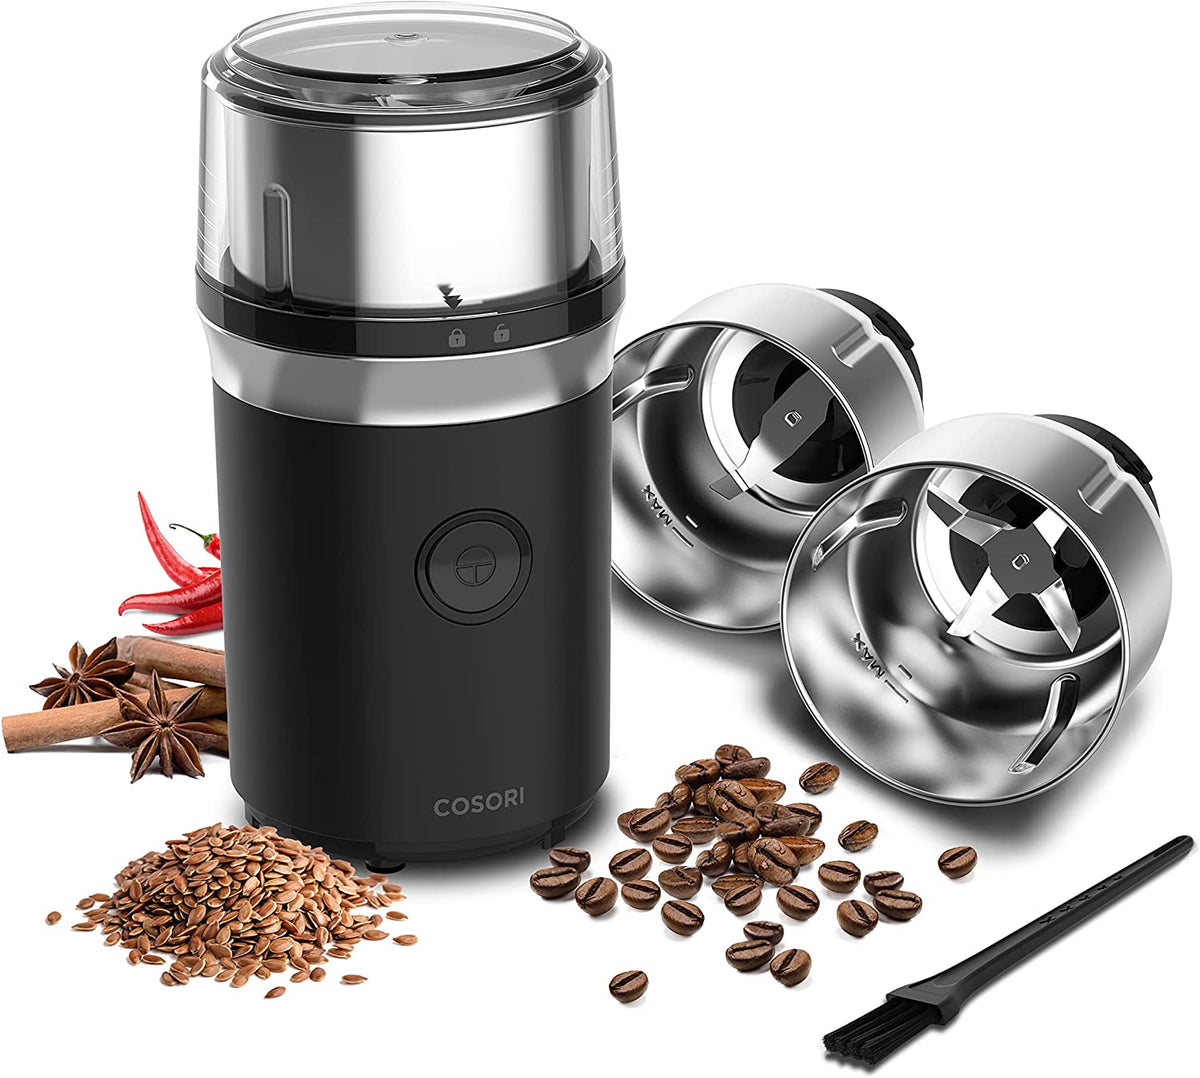 Molinillo eléctrico para especias, semillas, hierbas y granos de café, incluye 2 cuencos extraíbles de acero inoxidable, color negro Cosori